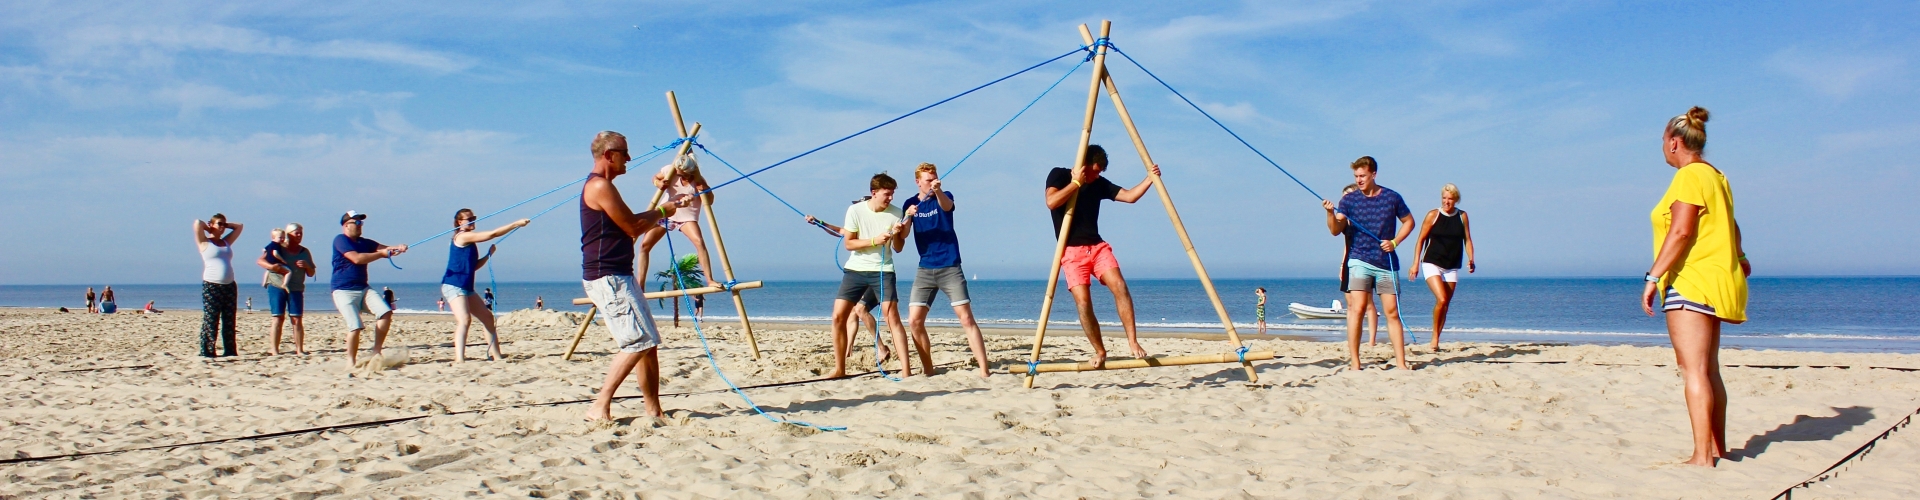 Expeditie robinson spel op het strand van Castricum in noord-holland